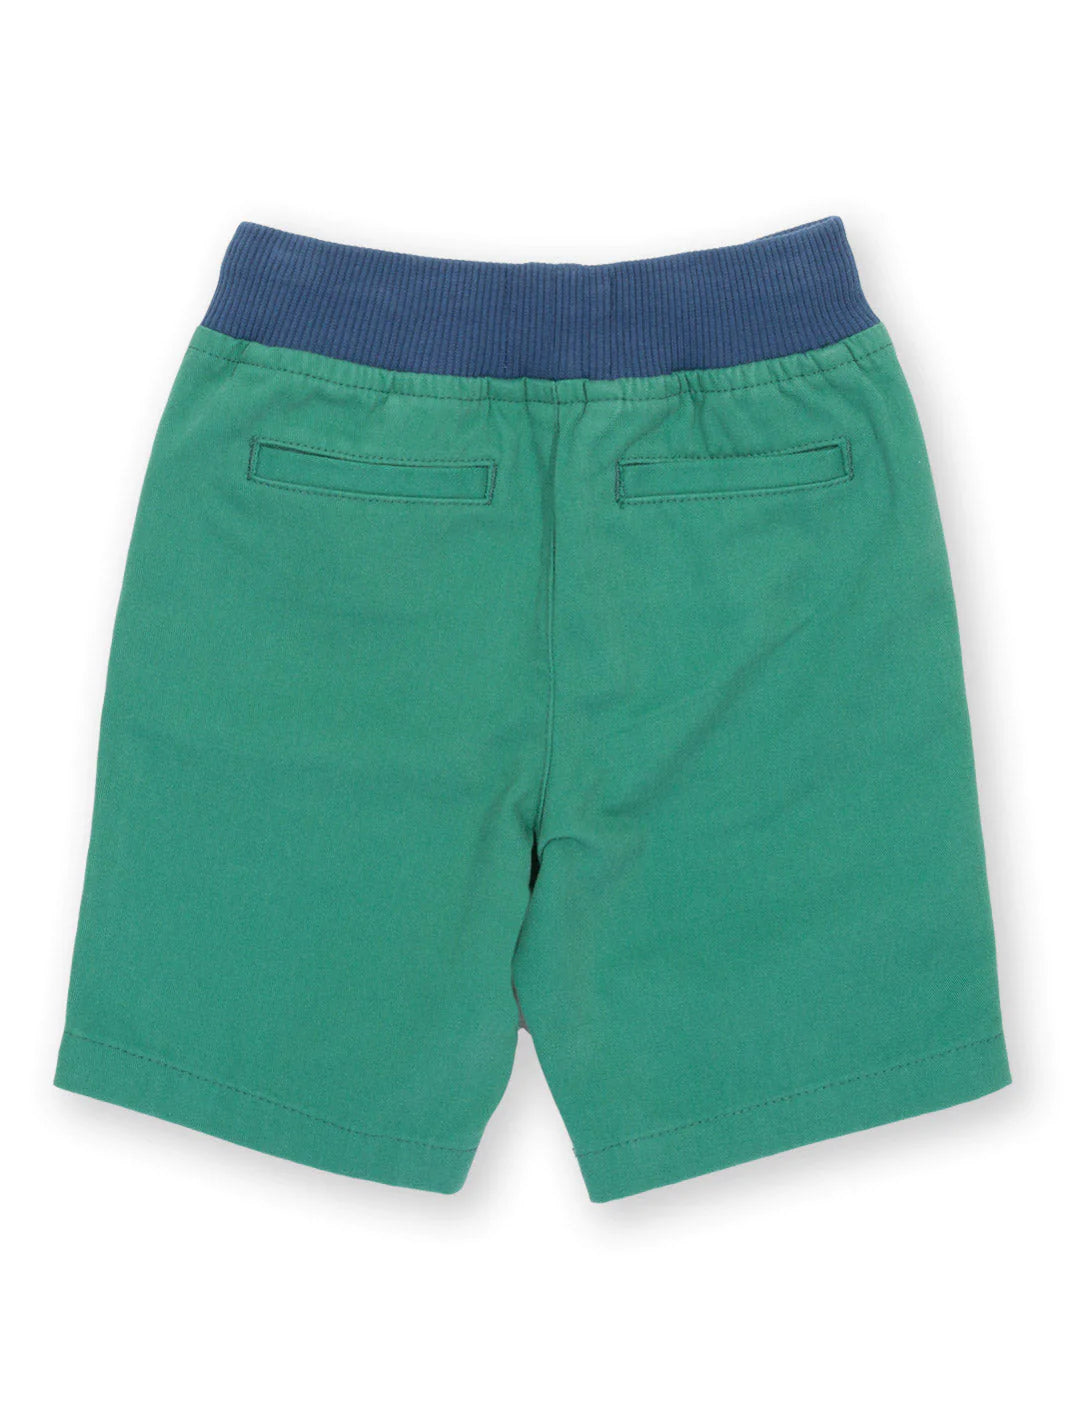 Yacht Shorts Green